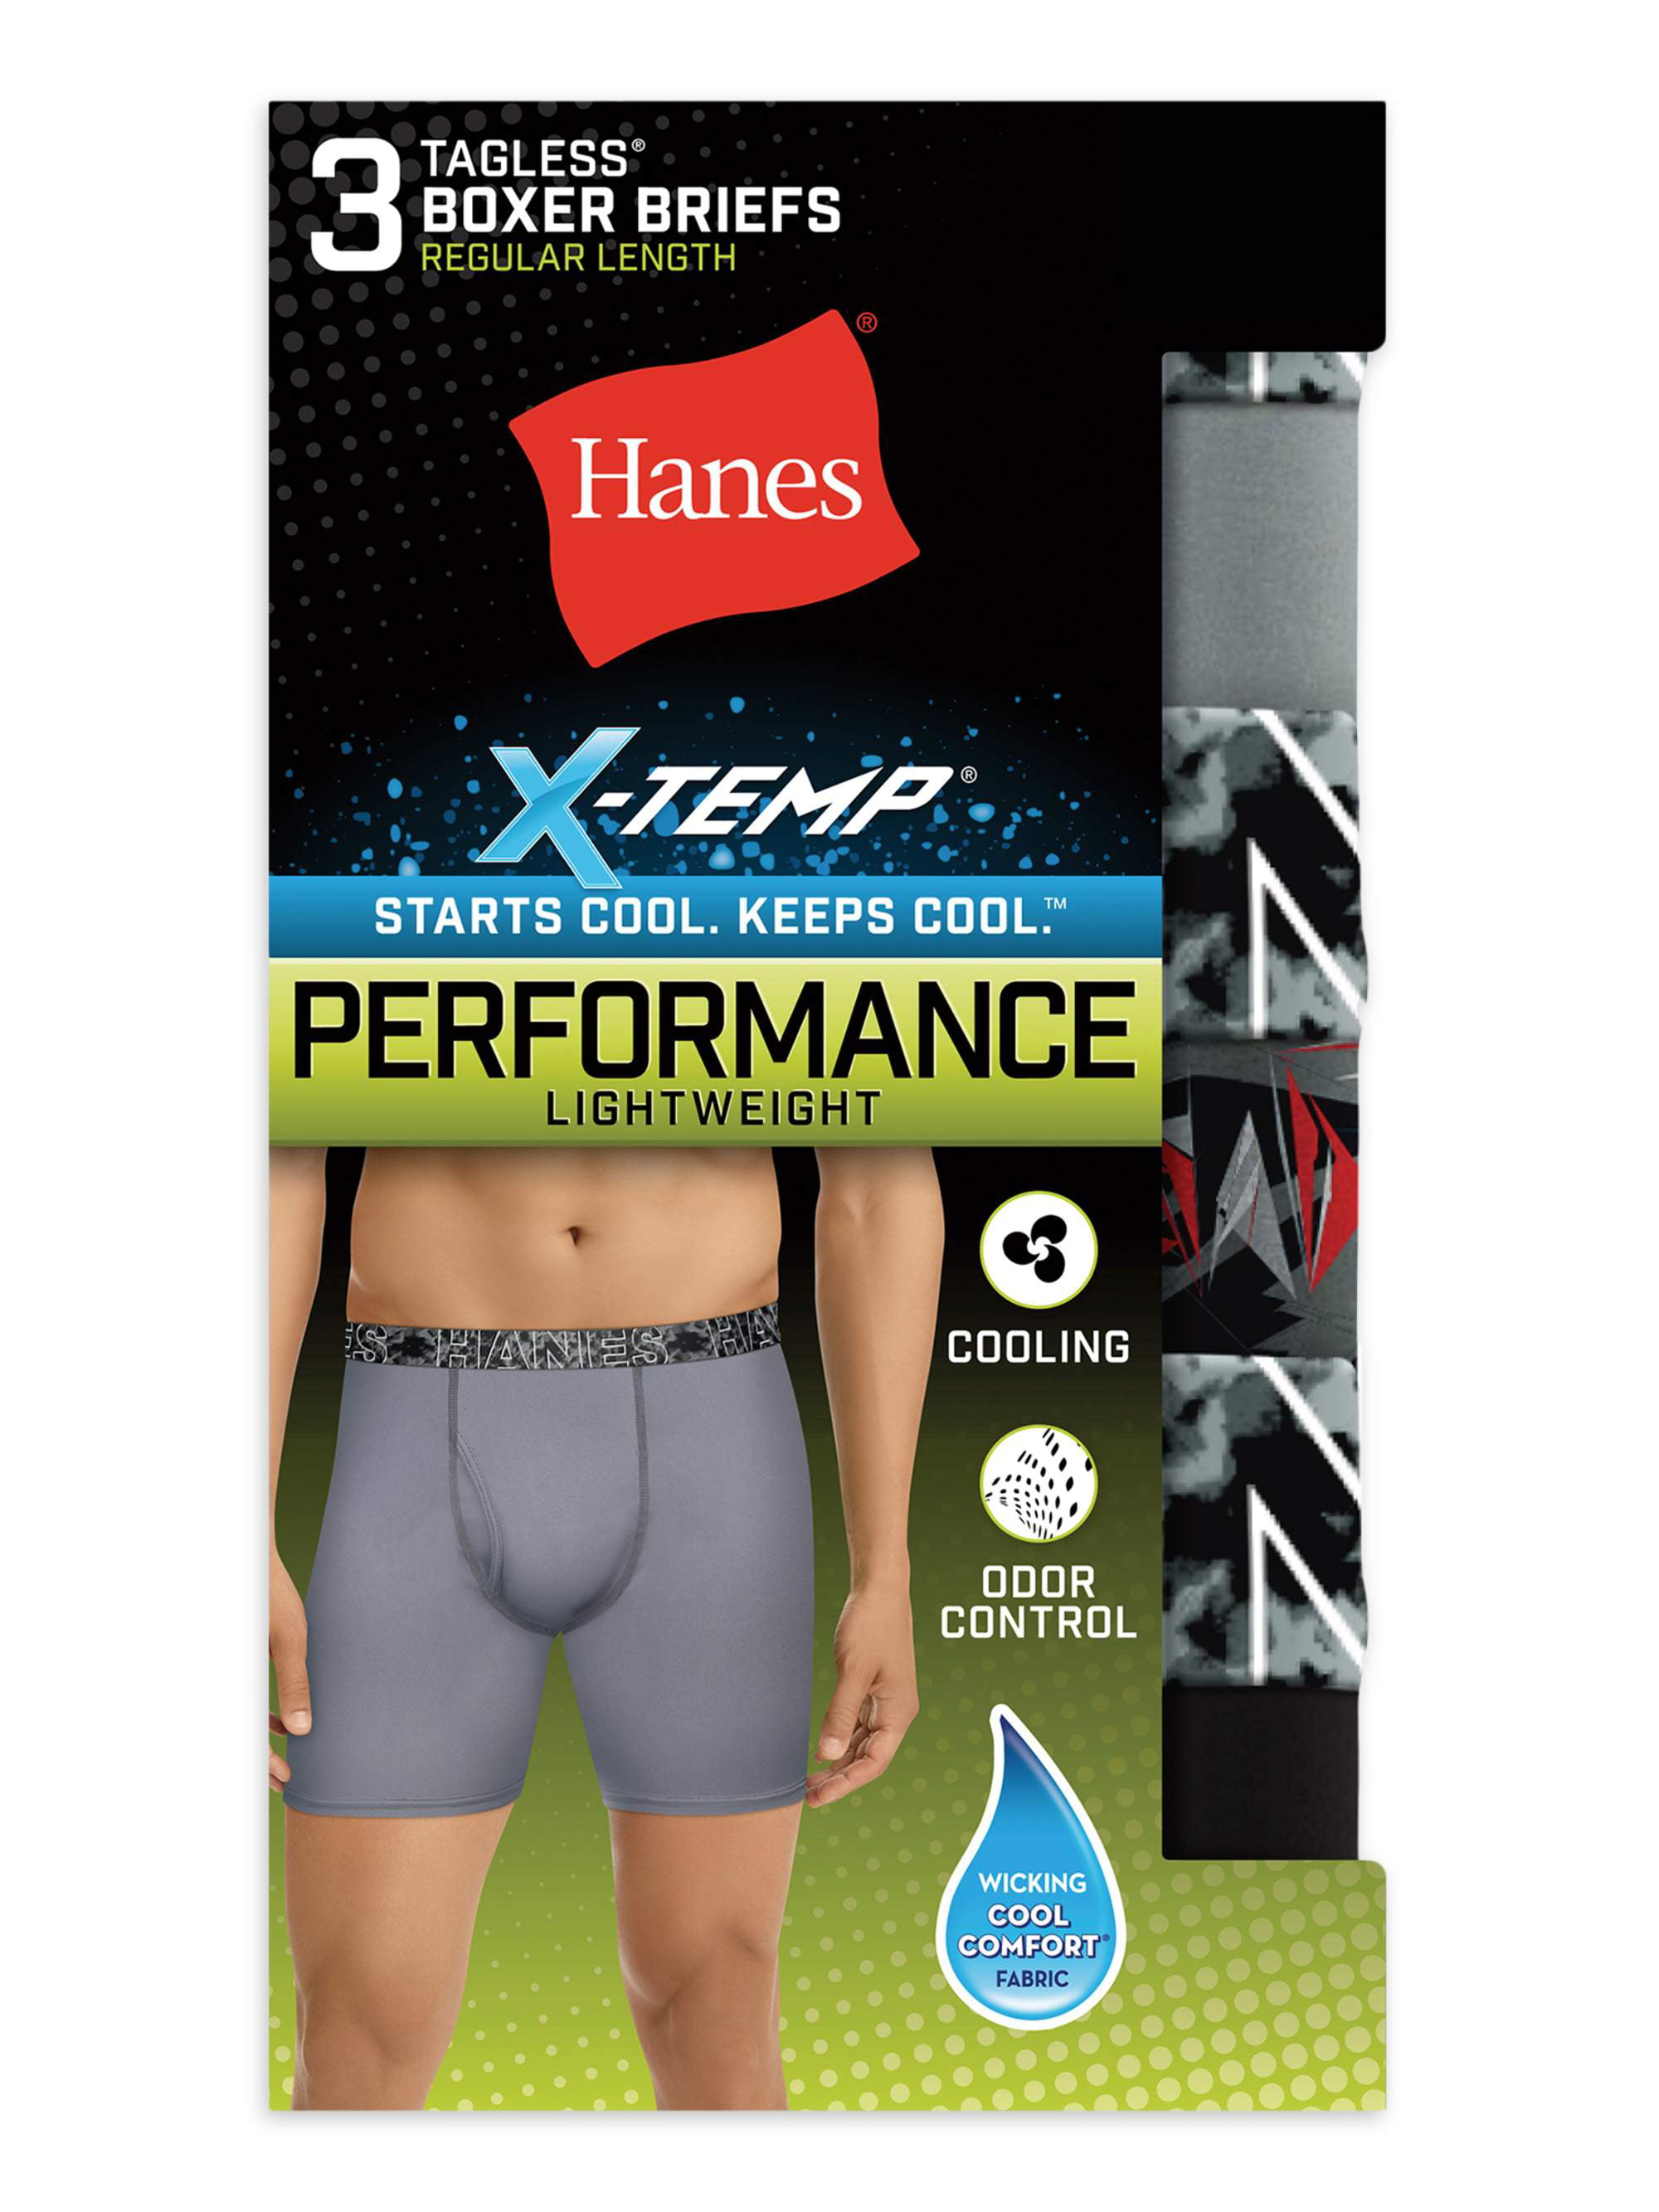 Hanes Boys Underwear, 7 Pack Tagless Boxer Briefs, Sizes S-XL